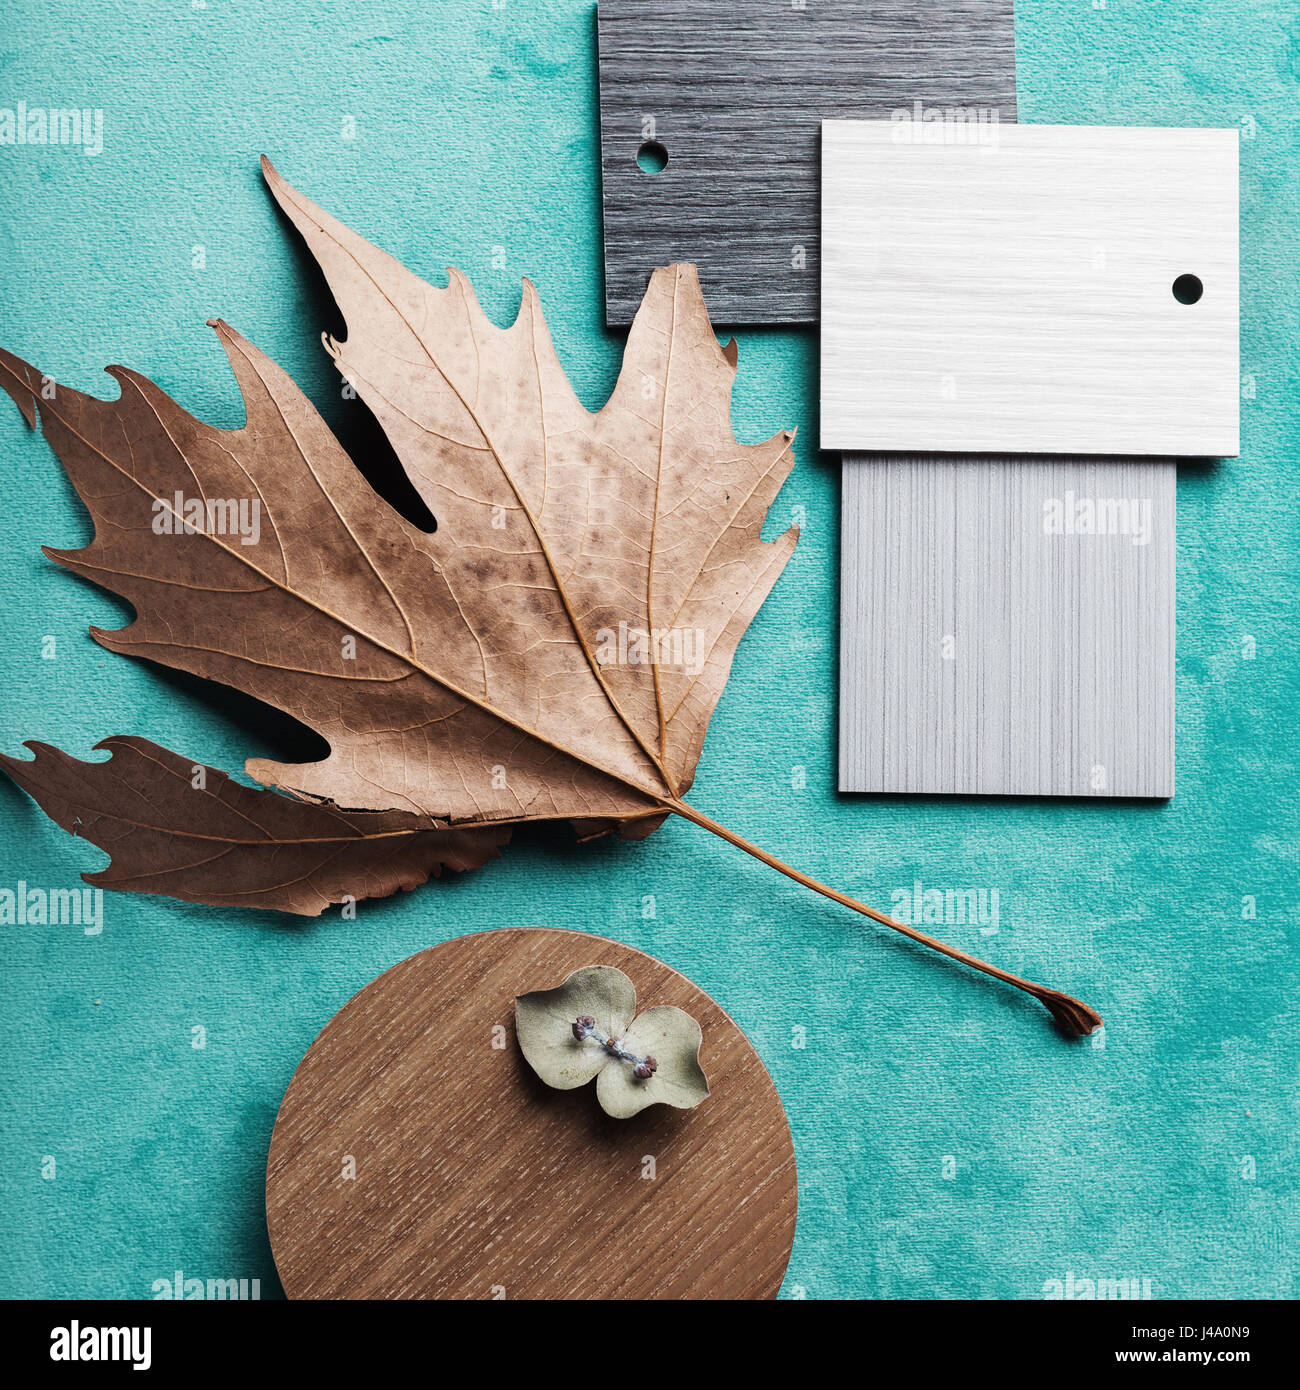 Herbst Innenraum Regelung auf Teal samt Hintergrund Stockfoto